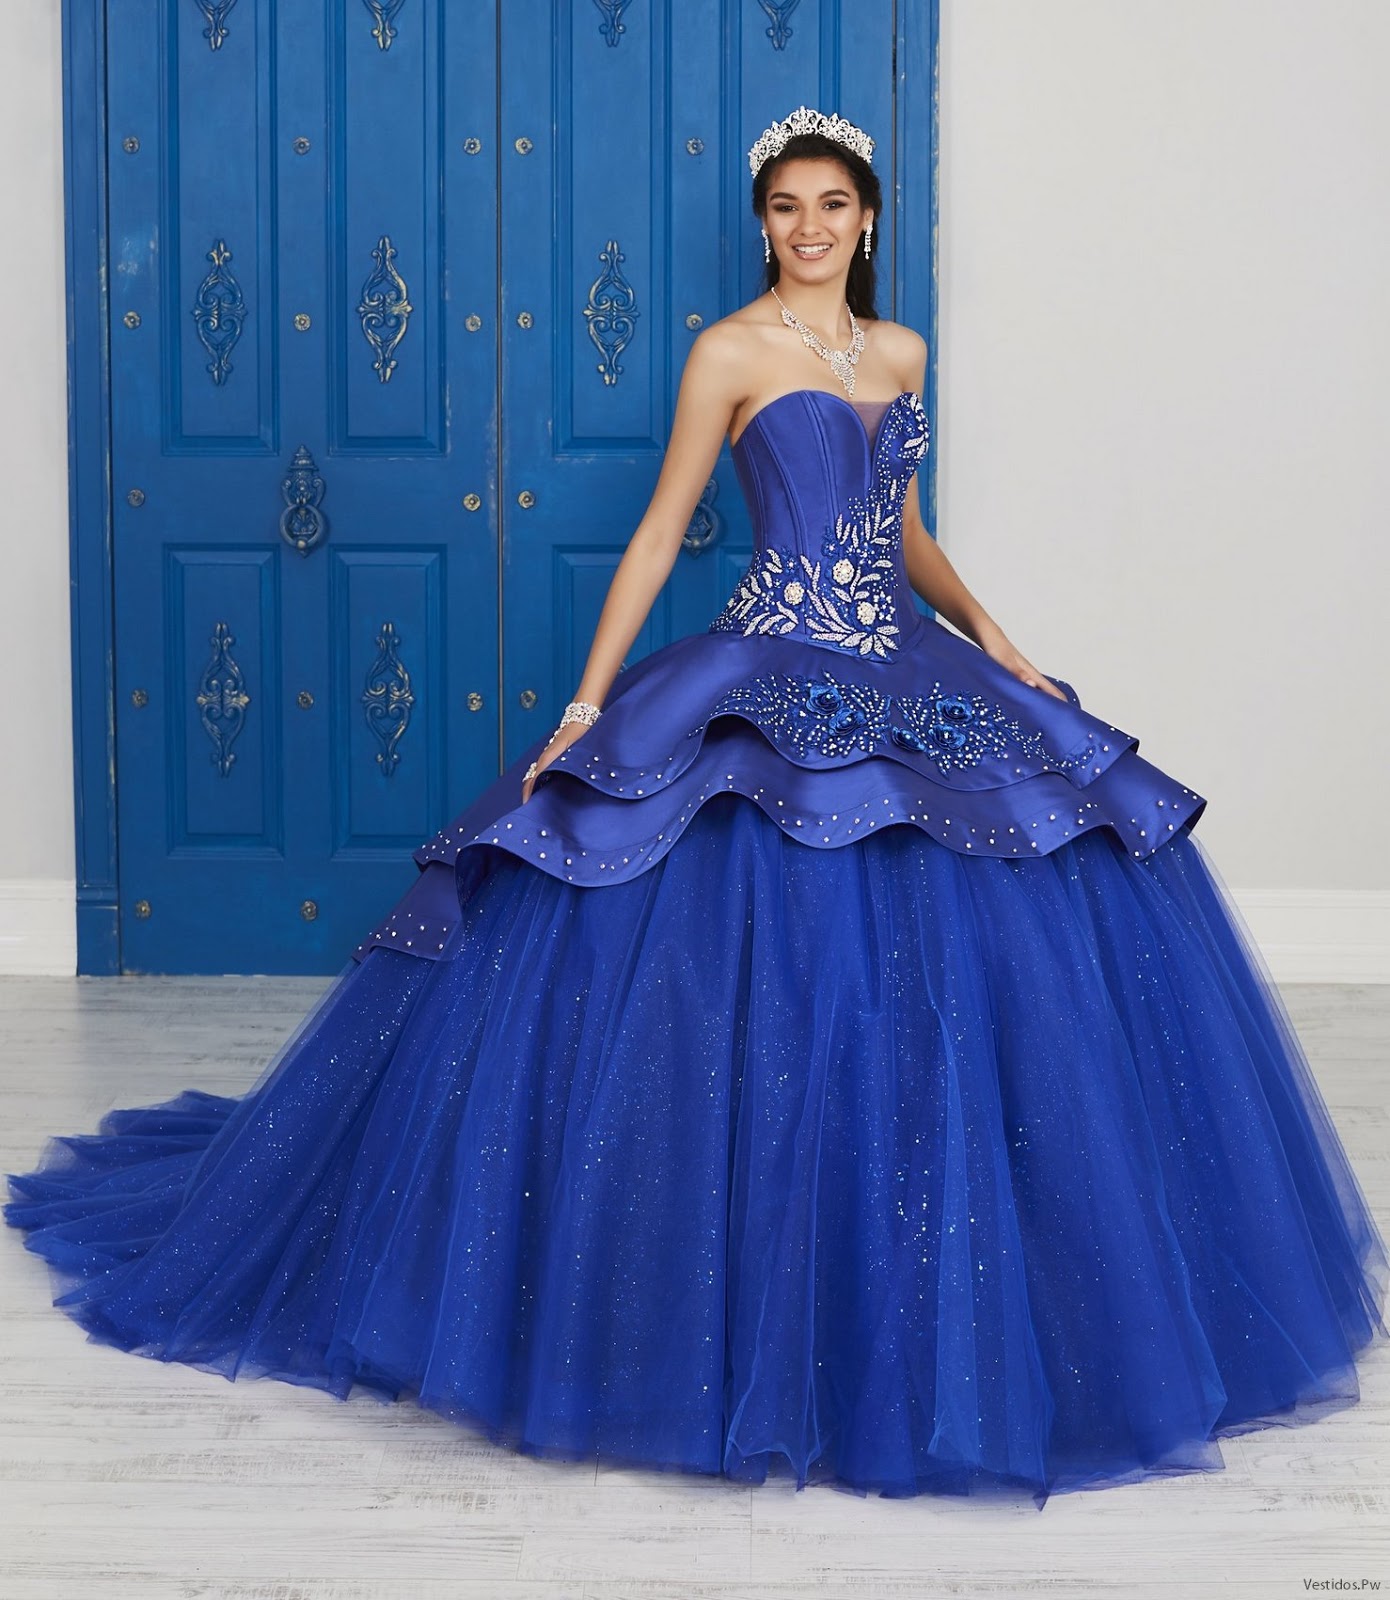 20 Vestidos De Xv Años Color Azul 【colecciÓn 2019】 Vestidos Moda 2019 2020